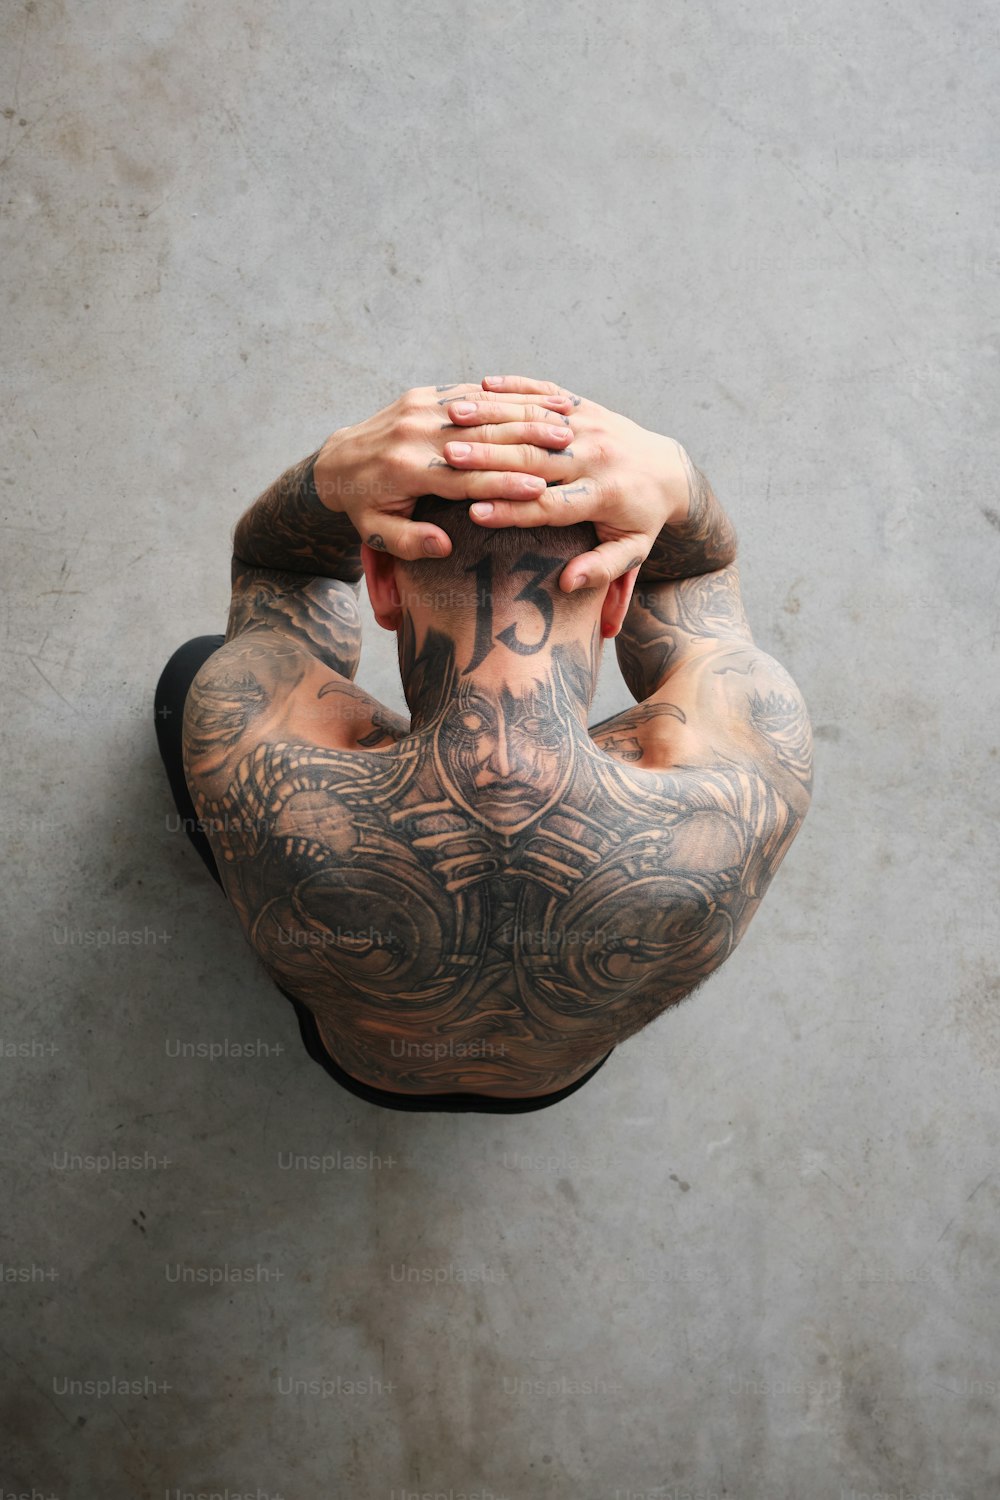 Un hombre con tatuajes en la espalda llevándose las manos a la cara